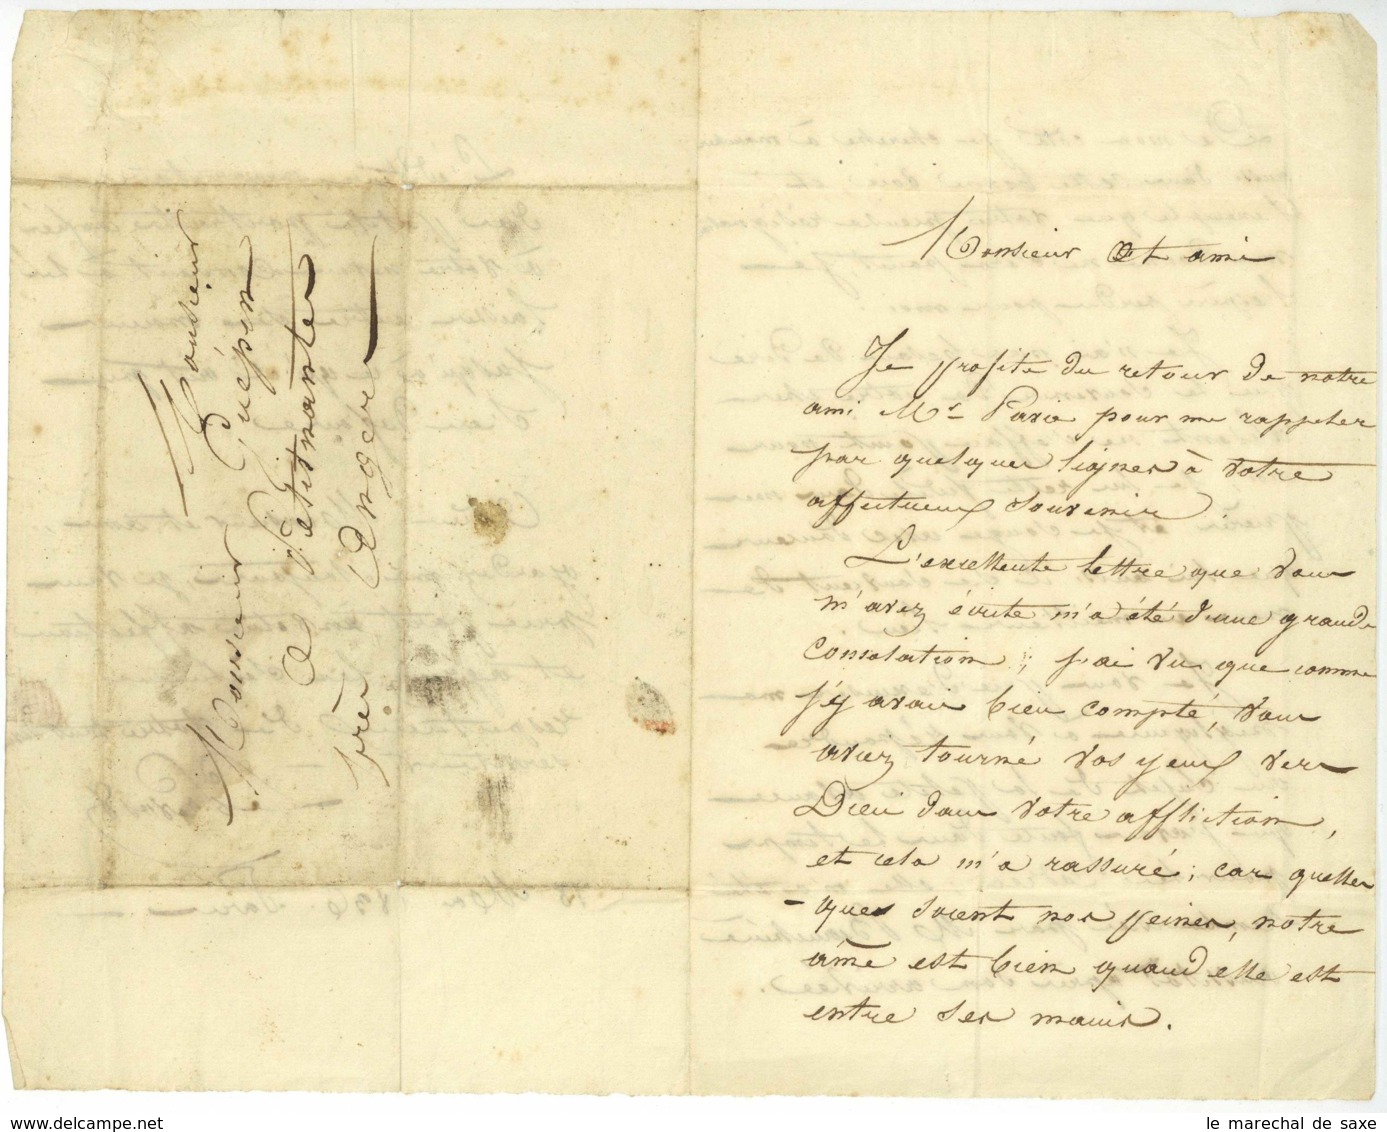 LE PREVOST LAS 1836 Paris Pour M GUEPIN A Petit Nantes Pres ANGERS - Manuscritos